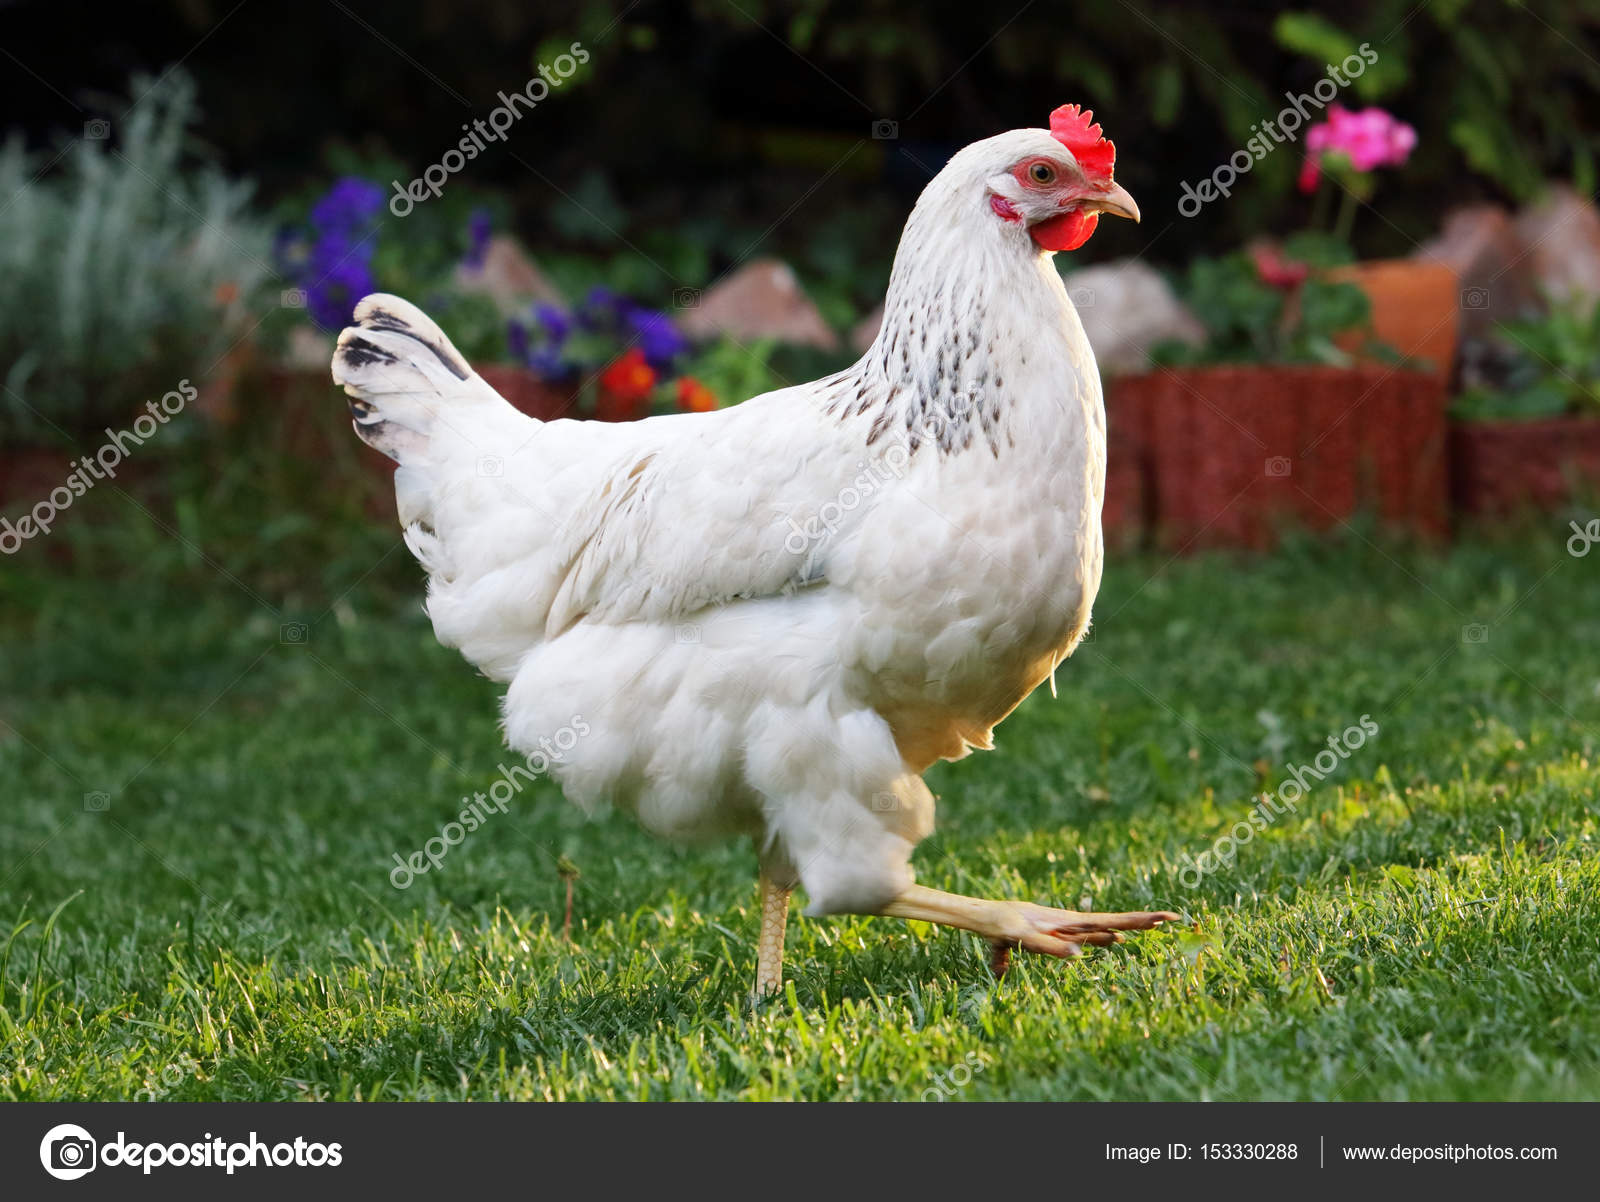 Chicken in nature outdoor farm — Stock Photo © TTstudio #153330288